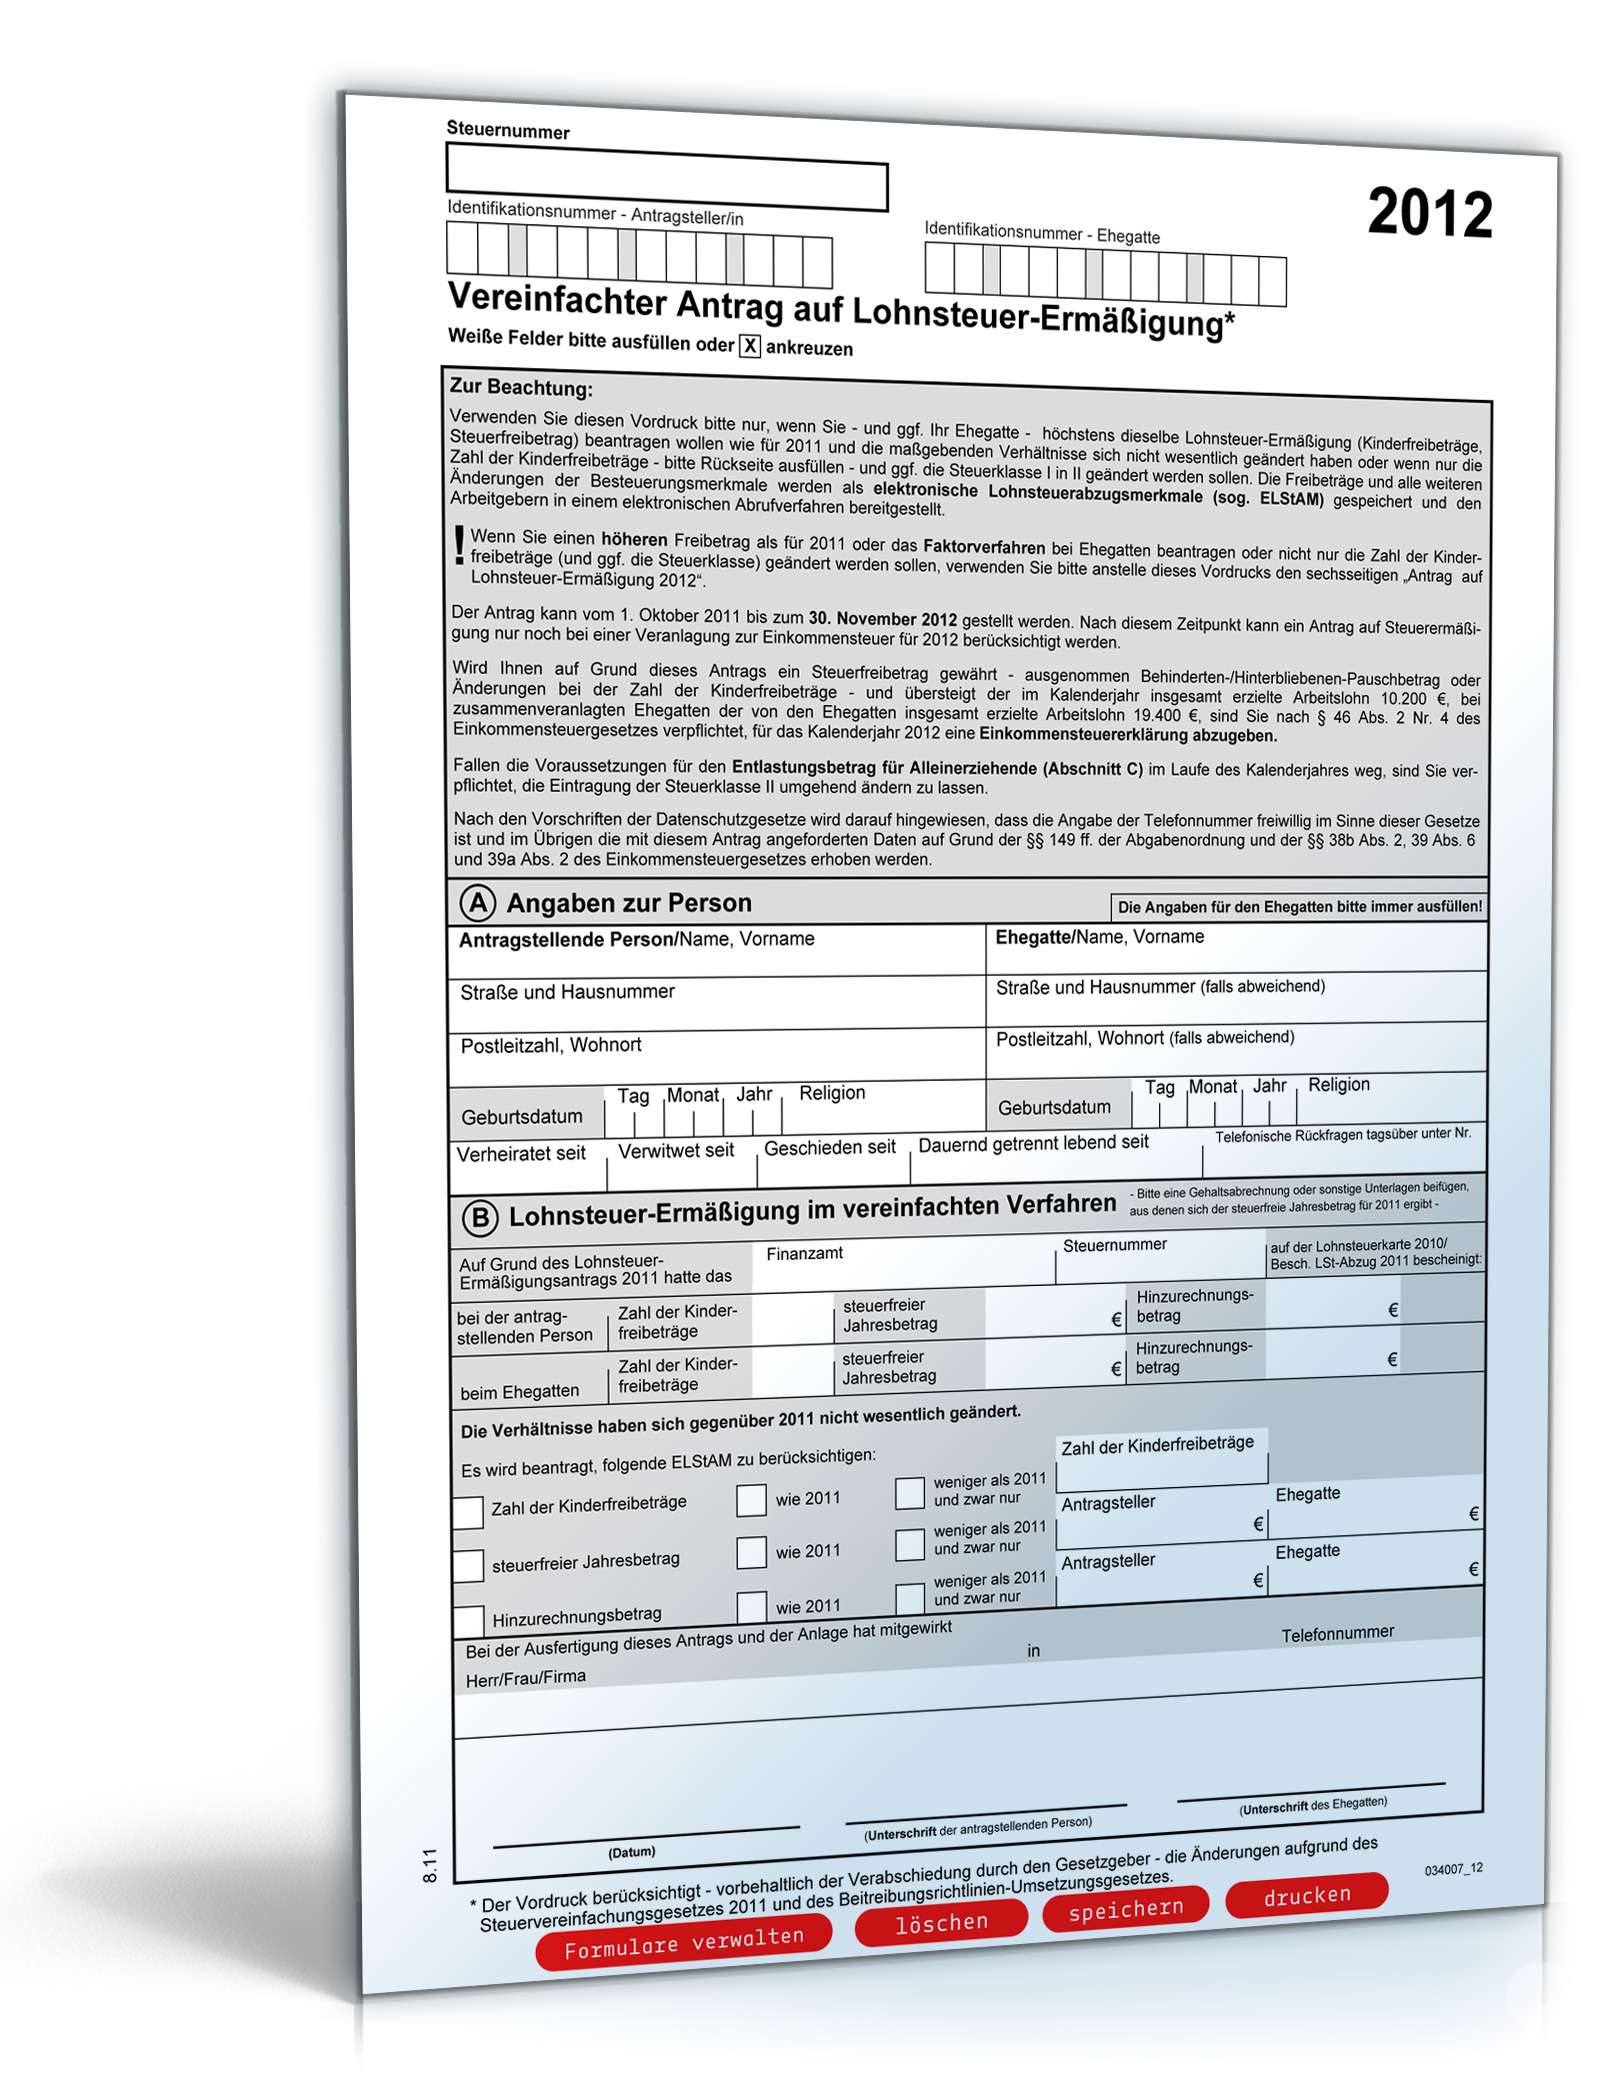 Vereinfachter Antrag auf Lohnsteuerermäßigung 2012 | Formular zum Download